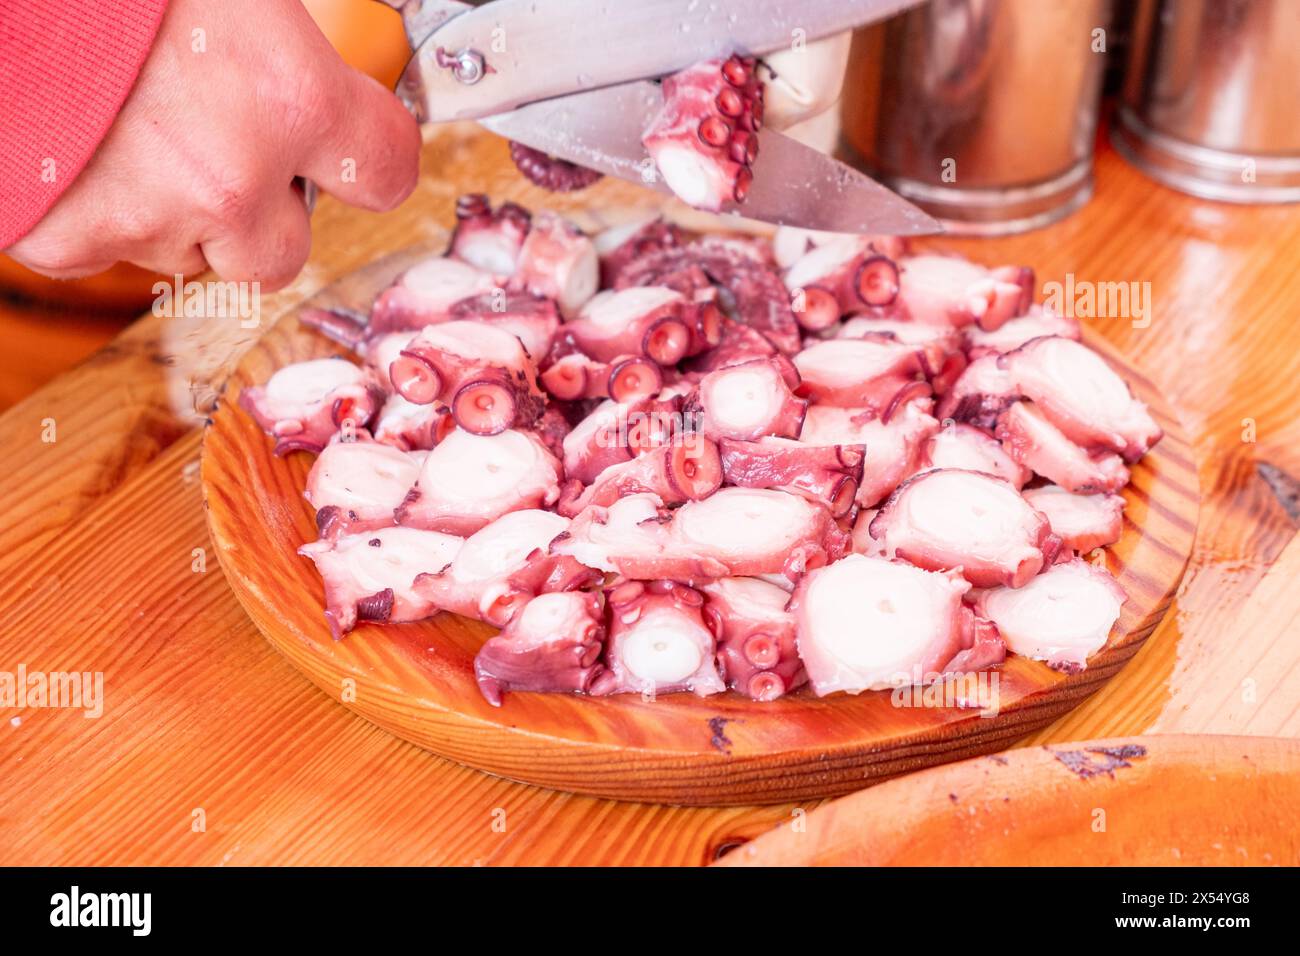 mains d'une personne coupant des tentacules de pieuvre préparant une ration de pieuvre. Pulpo a feira. Galice, nord de l'Espagne Banque D'Images